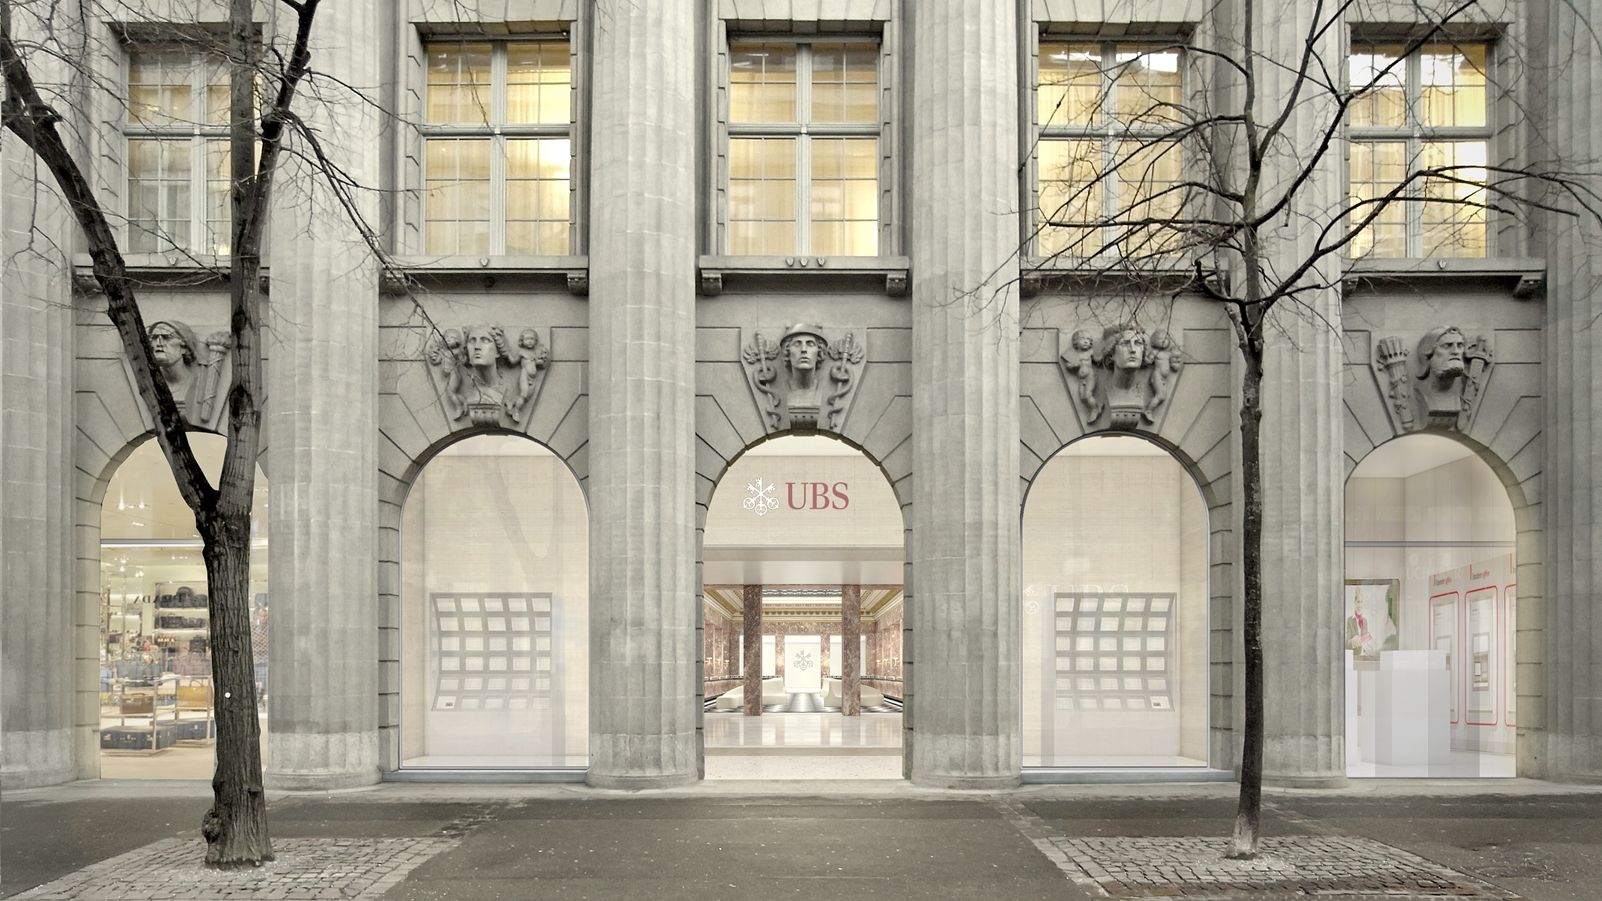 Gesamterneuerung Hauptsitz UBS - Bild 2.jpg